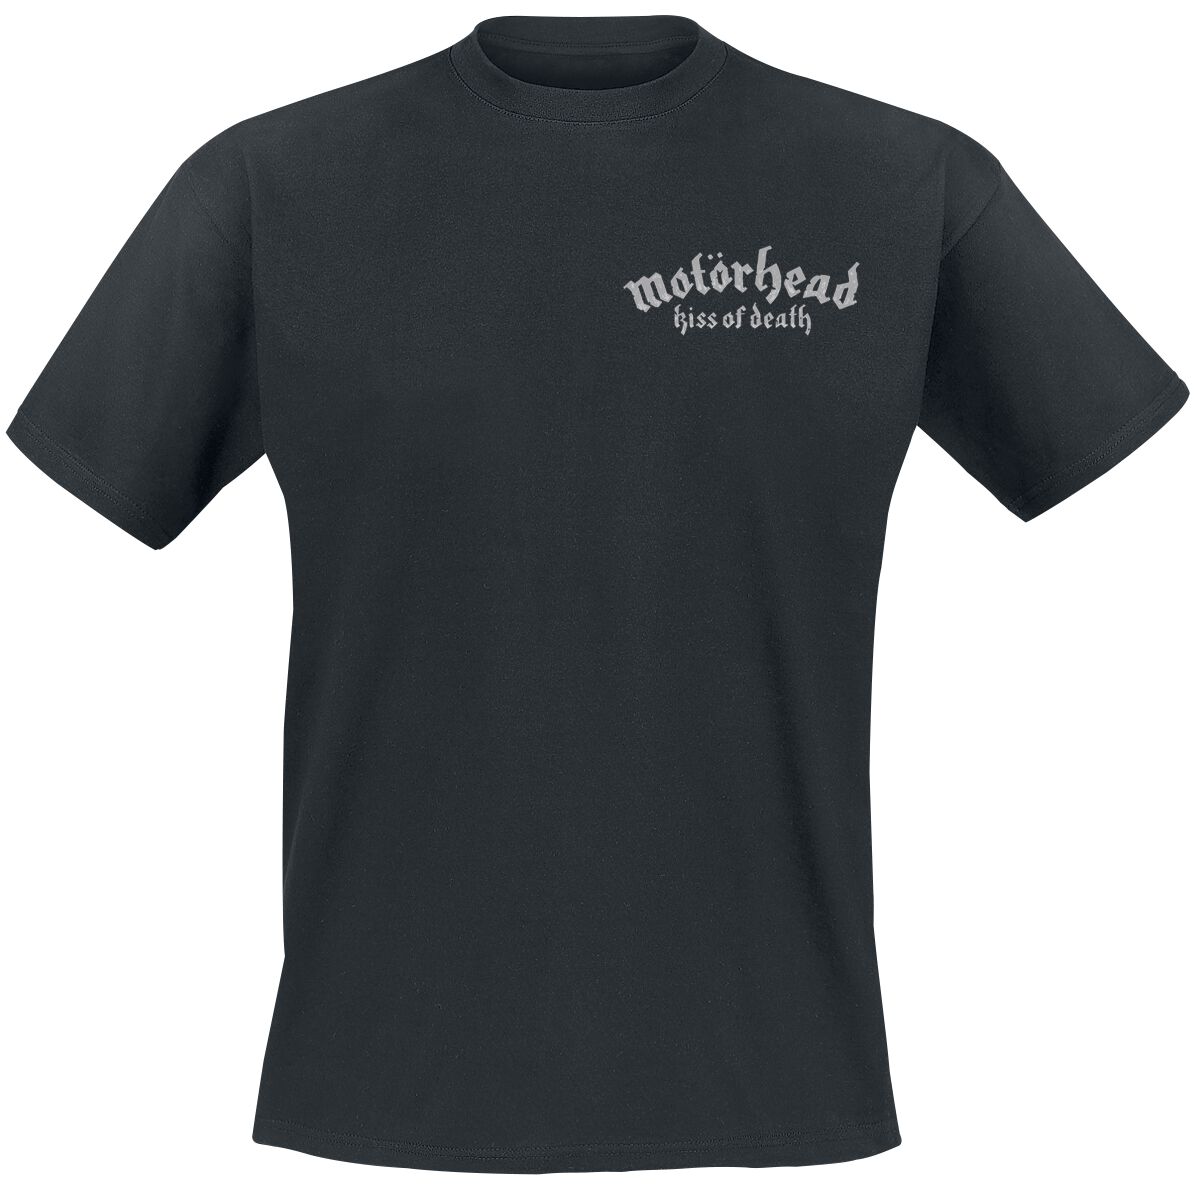 Motörhead T-Shirt - Kiss Of Death Bullet Circle V2 - S bis 4XL - für Männer - Größe M - schwarz  - Lizenziertes Merchandise!